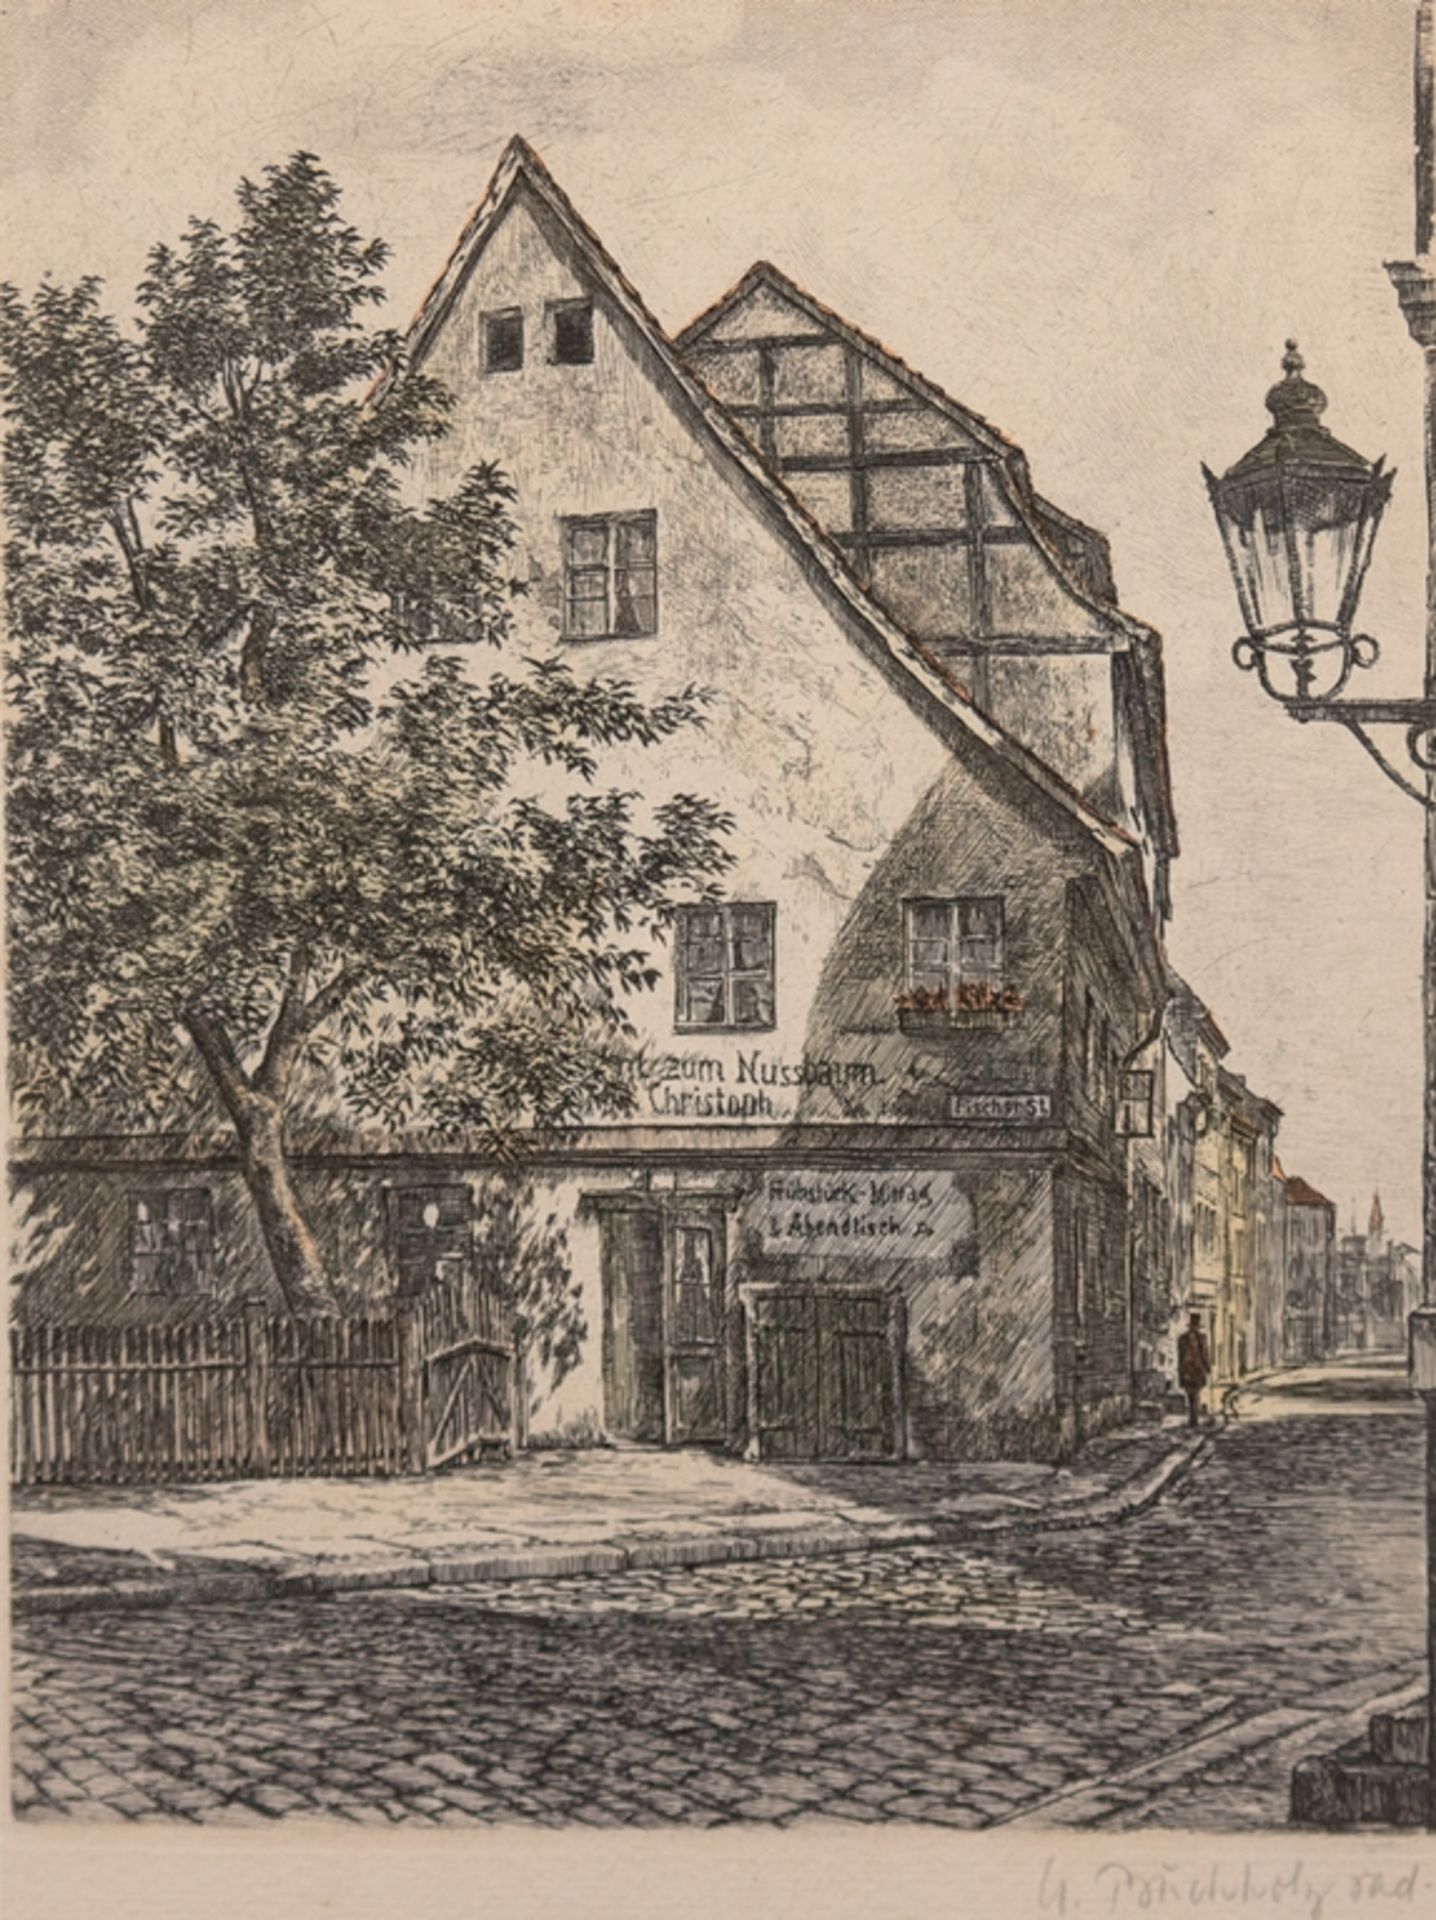 Buchholz, U. "Café zum Nussbaum im Berliner Nikolaiviertel", kolorierte Radierung, sign. u.r., 24,5